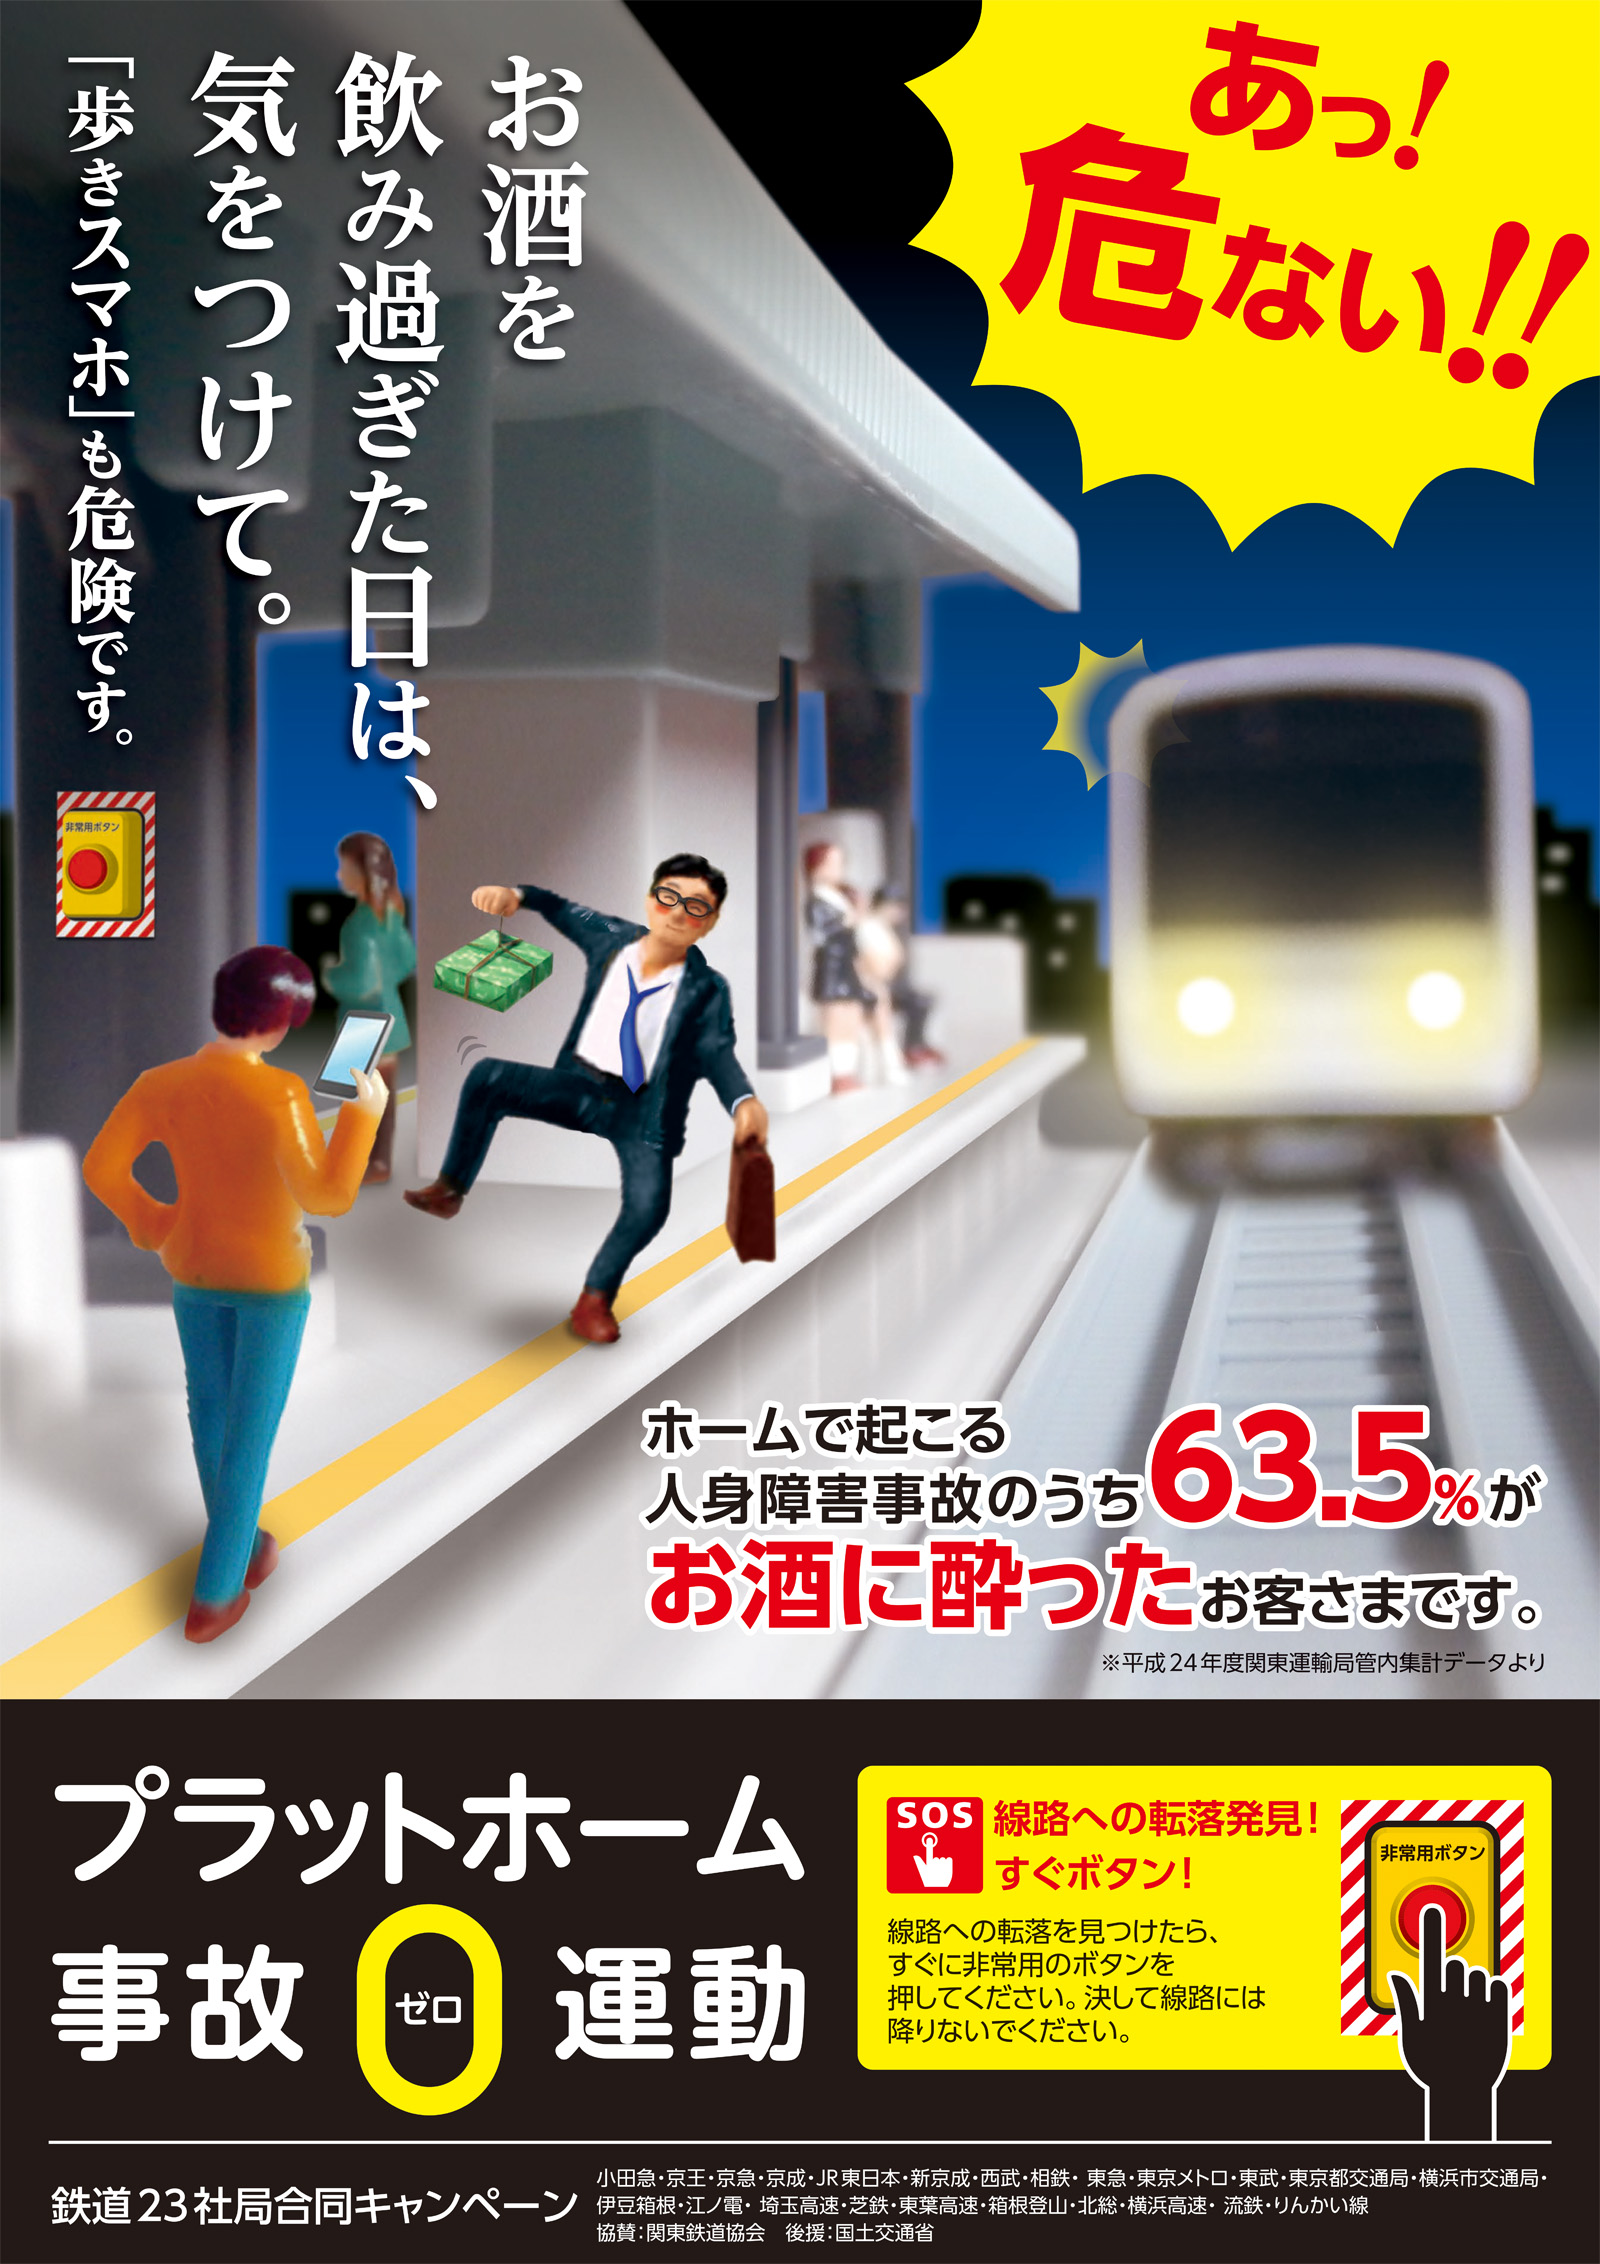 Betrunkene Passagiere verursachen die meisten Personenunfälle auf dem Bahnsteig.